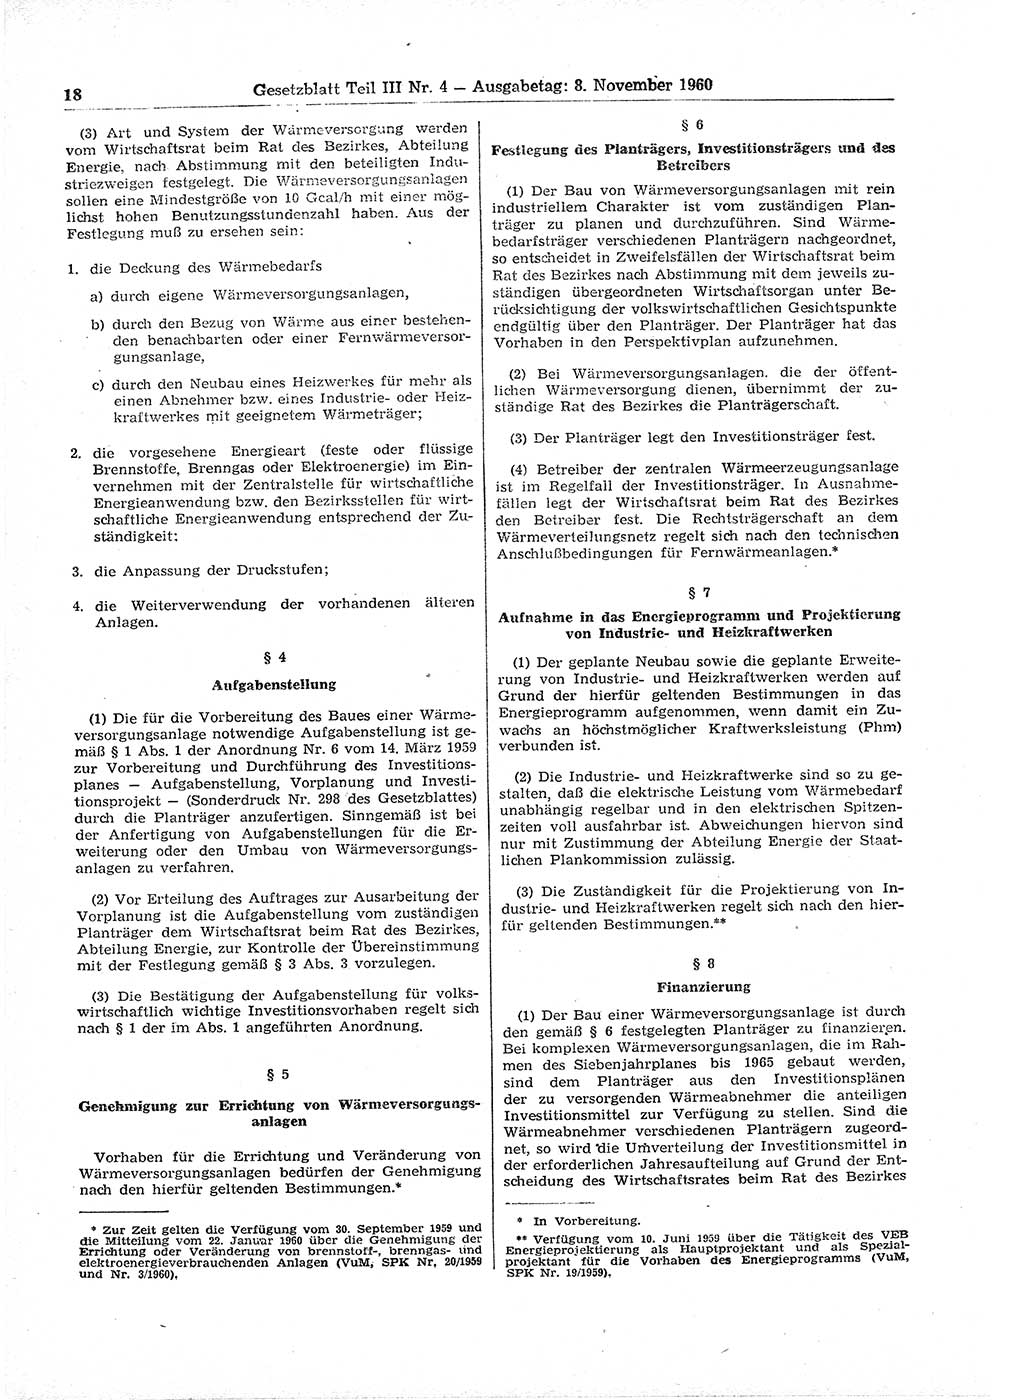 Gesetzblatt (GBl.) der Deutschen Demokratischen Republik (DDR) Teil ⅠⅠⅠ 1960, Seite 18 (GBl. DDR ⅠⅠⅠ 1960, S. 18)